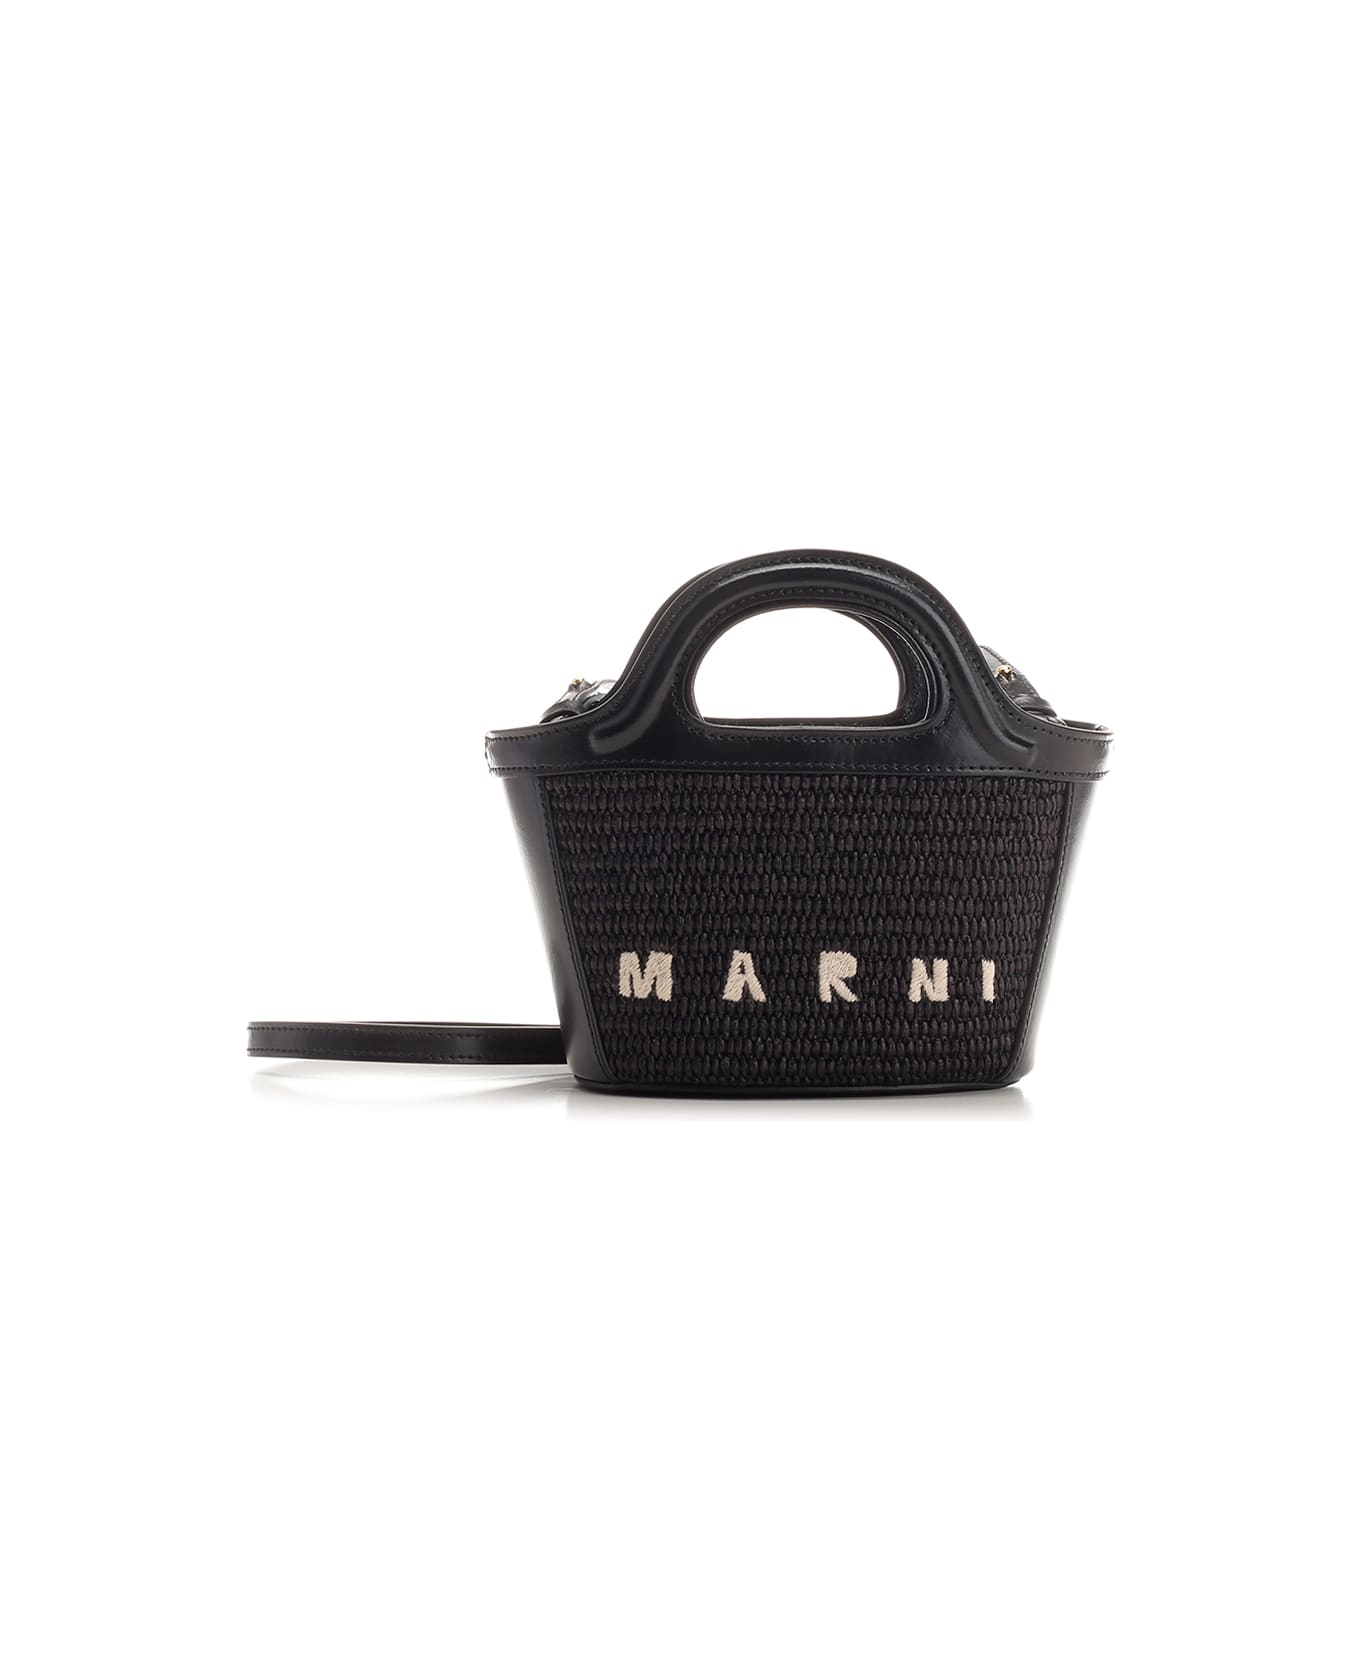 Marni 'tropicalia' Small Hand Bag - Nero